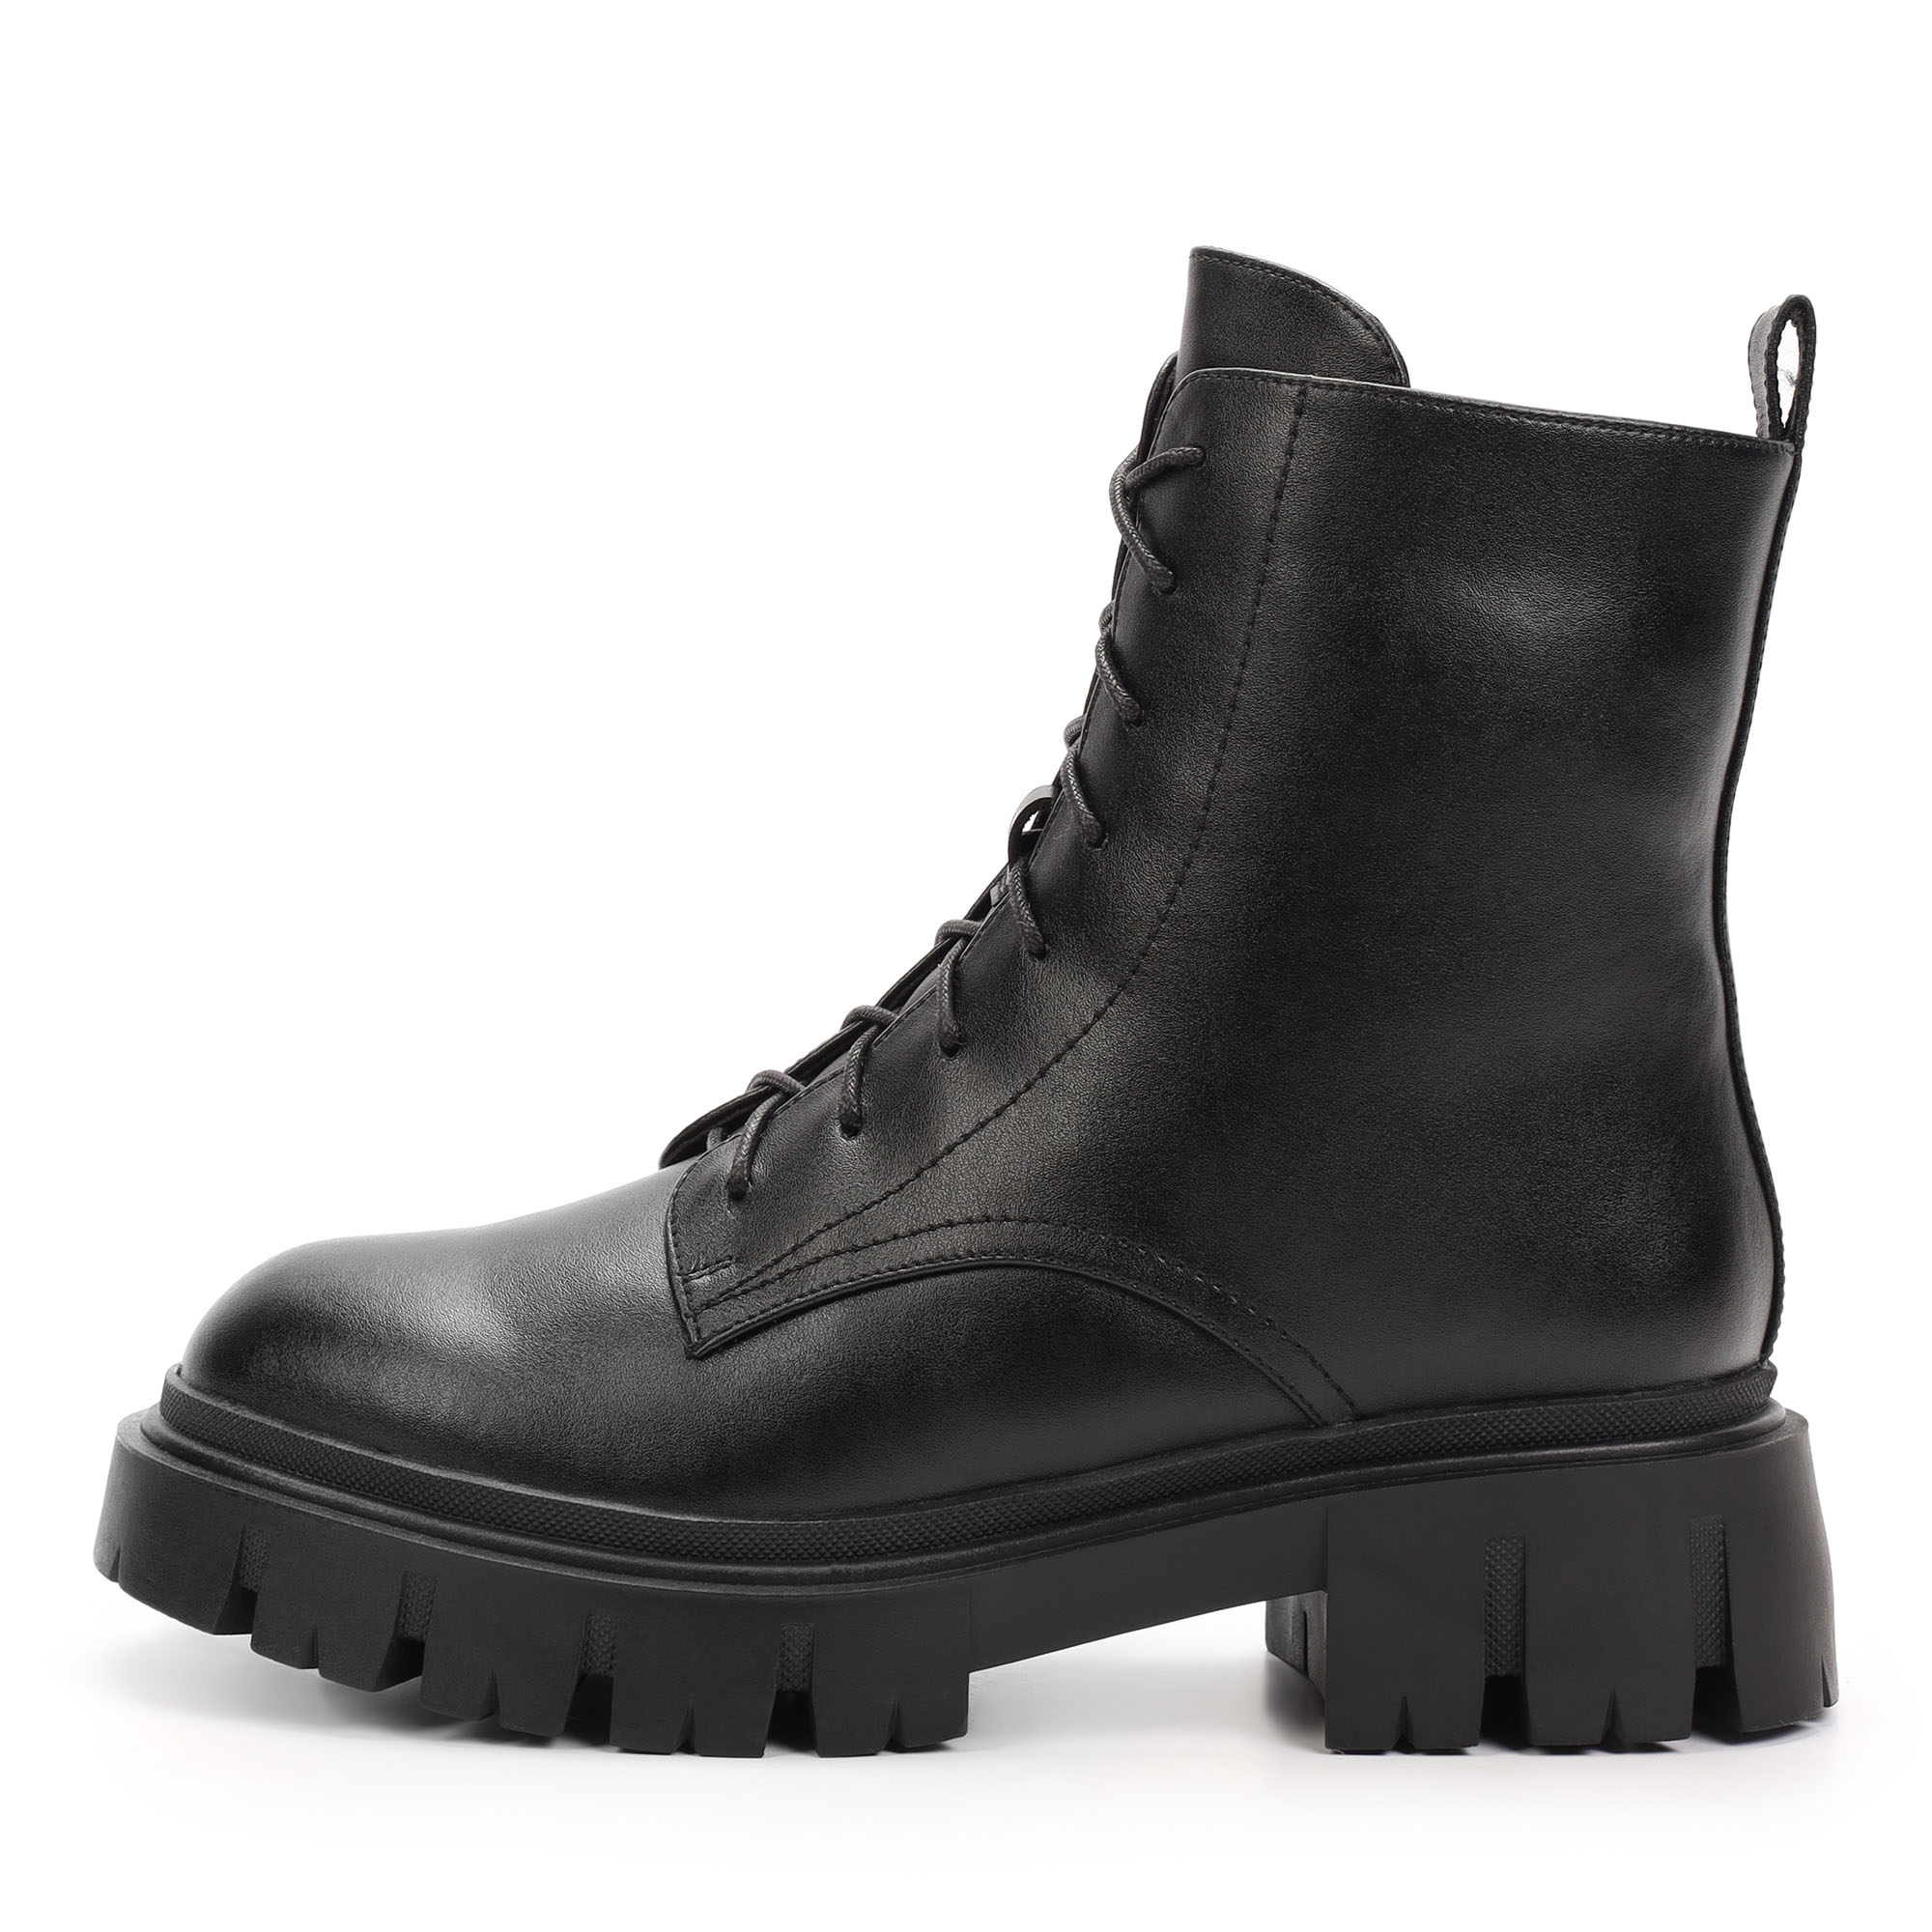 Ботинки Thomas Munz 094-235A-5602, цвет черный, размер 38